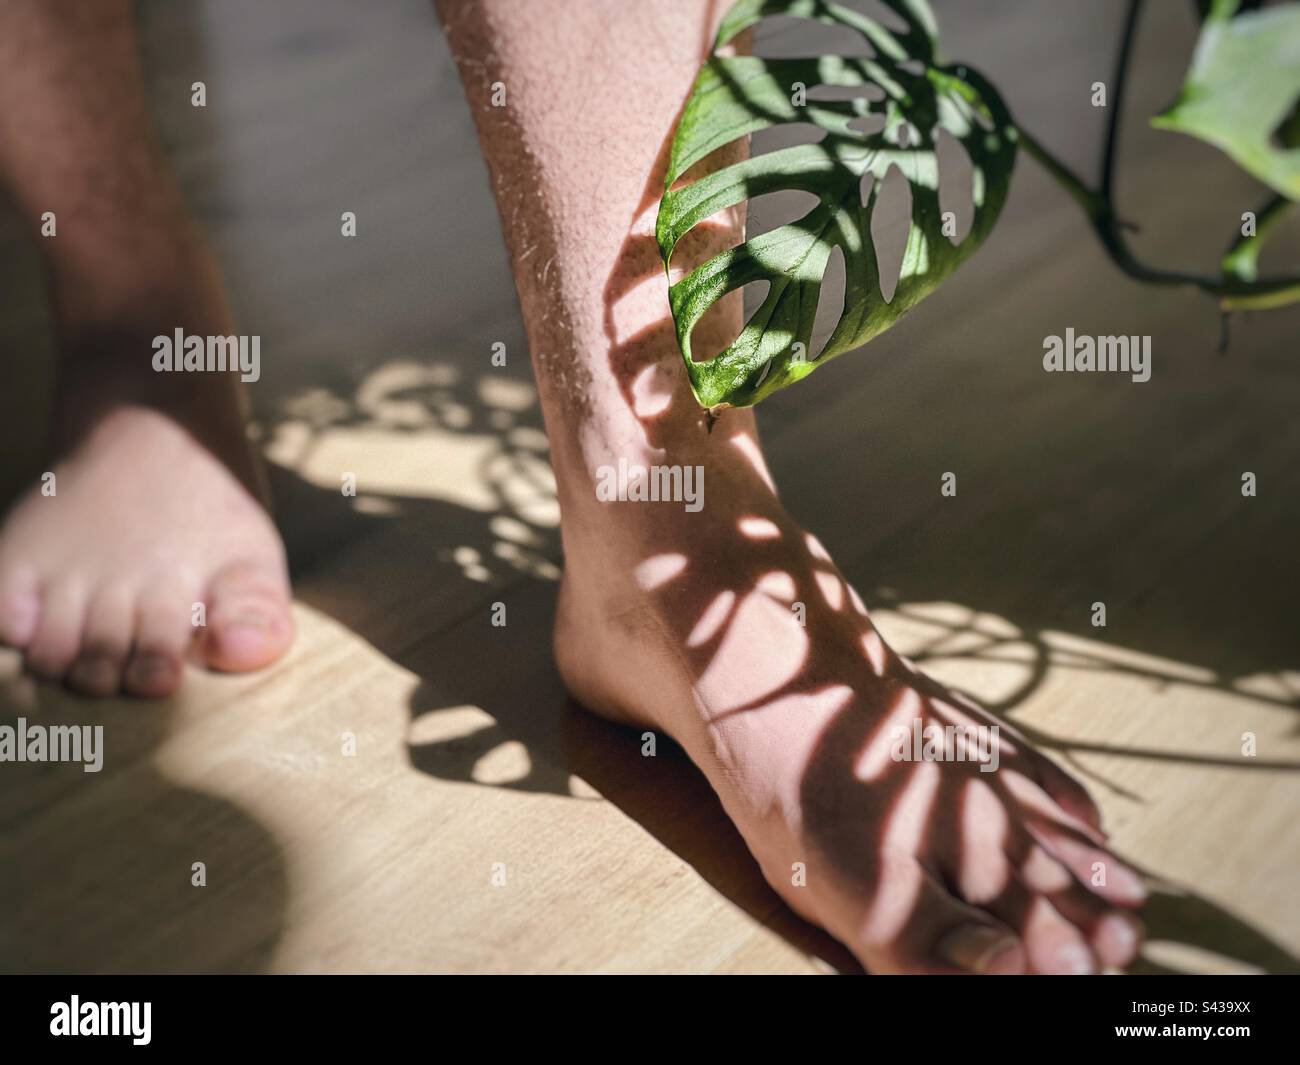 Partie basse des jambes humaines et des pieds humains avec motif d'ombre moulé par la plante de fromage suisse également connue sous le nom de plante Monstera Adansonii sur le plancher de bois. Banque D'Images